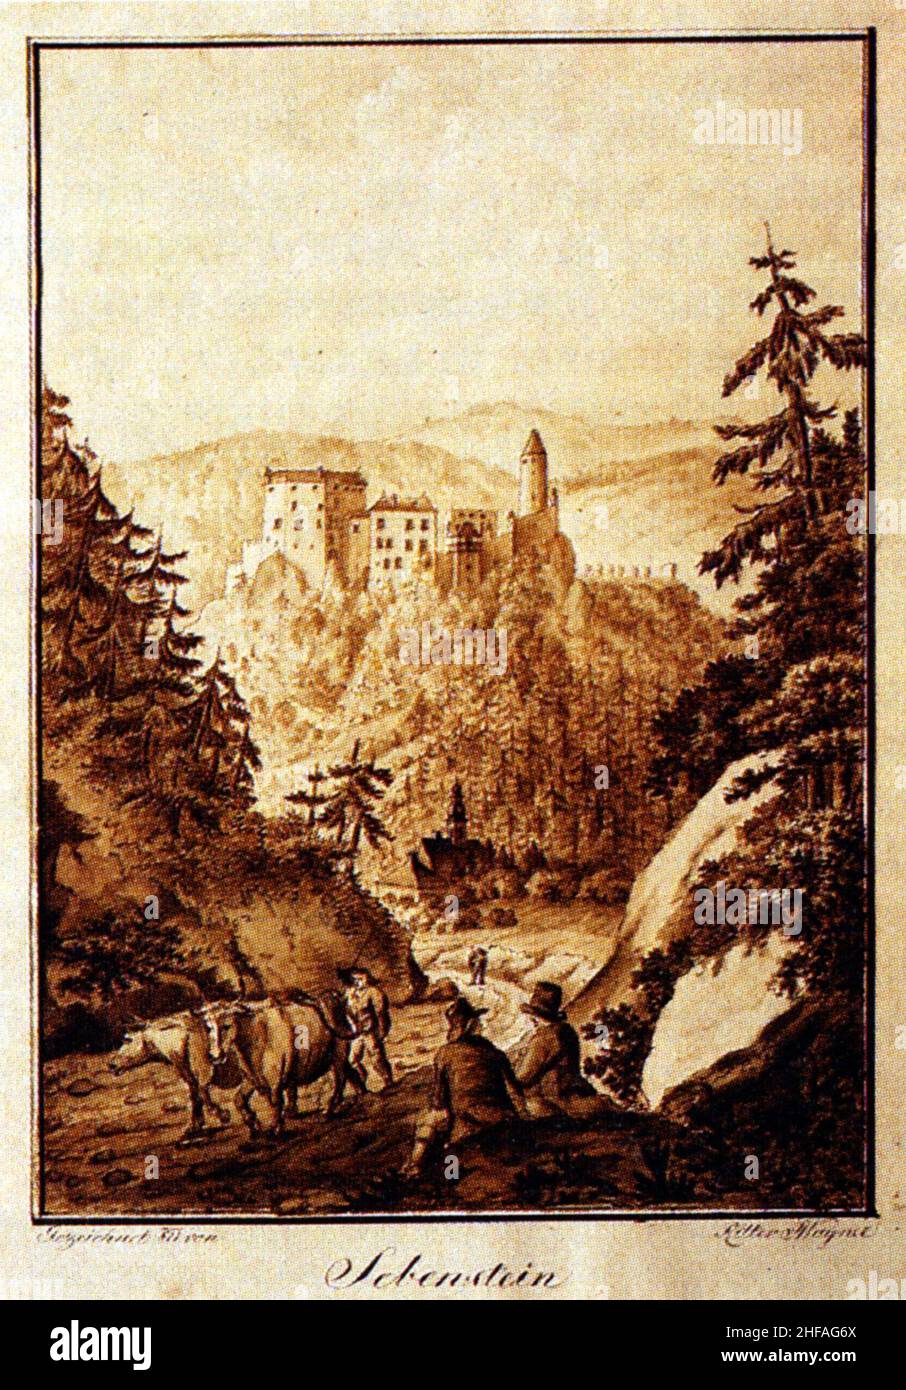 Seebenstein-(1811). Stock Photo